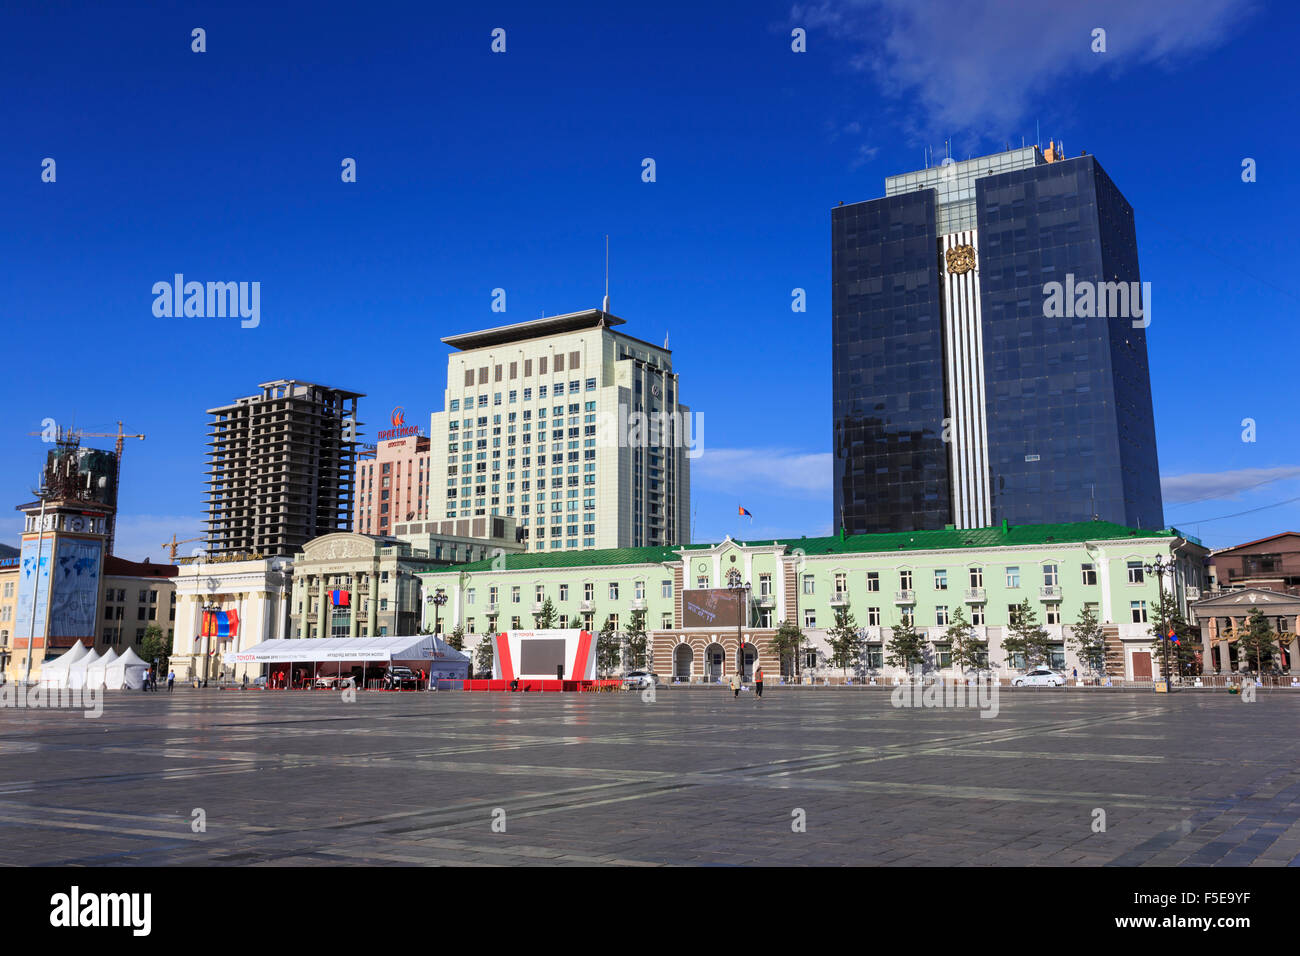 Viejos y nuevos edificios alrededor de Chinggis Khaan (Sukhbaatar cuadrados) bajo un cielo azul, mañana, Ulaanbaatar (Ulan Bator, Mongolia Foto de stock